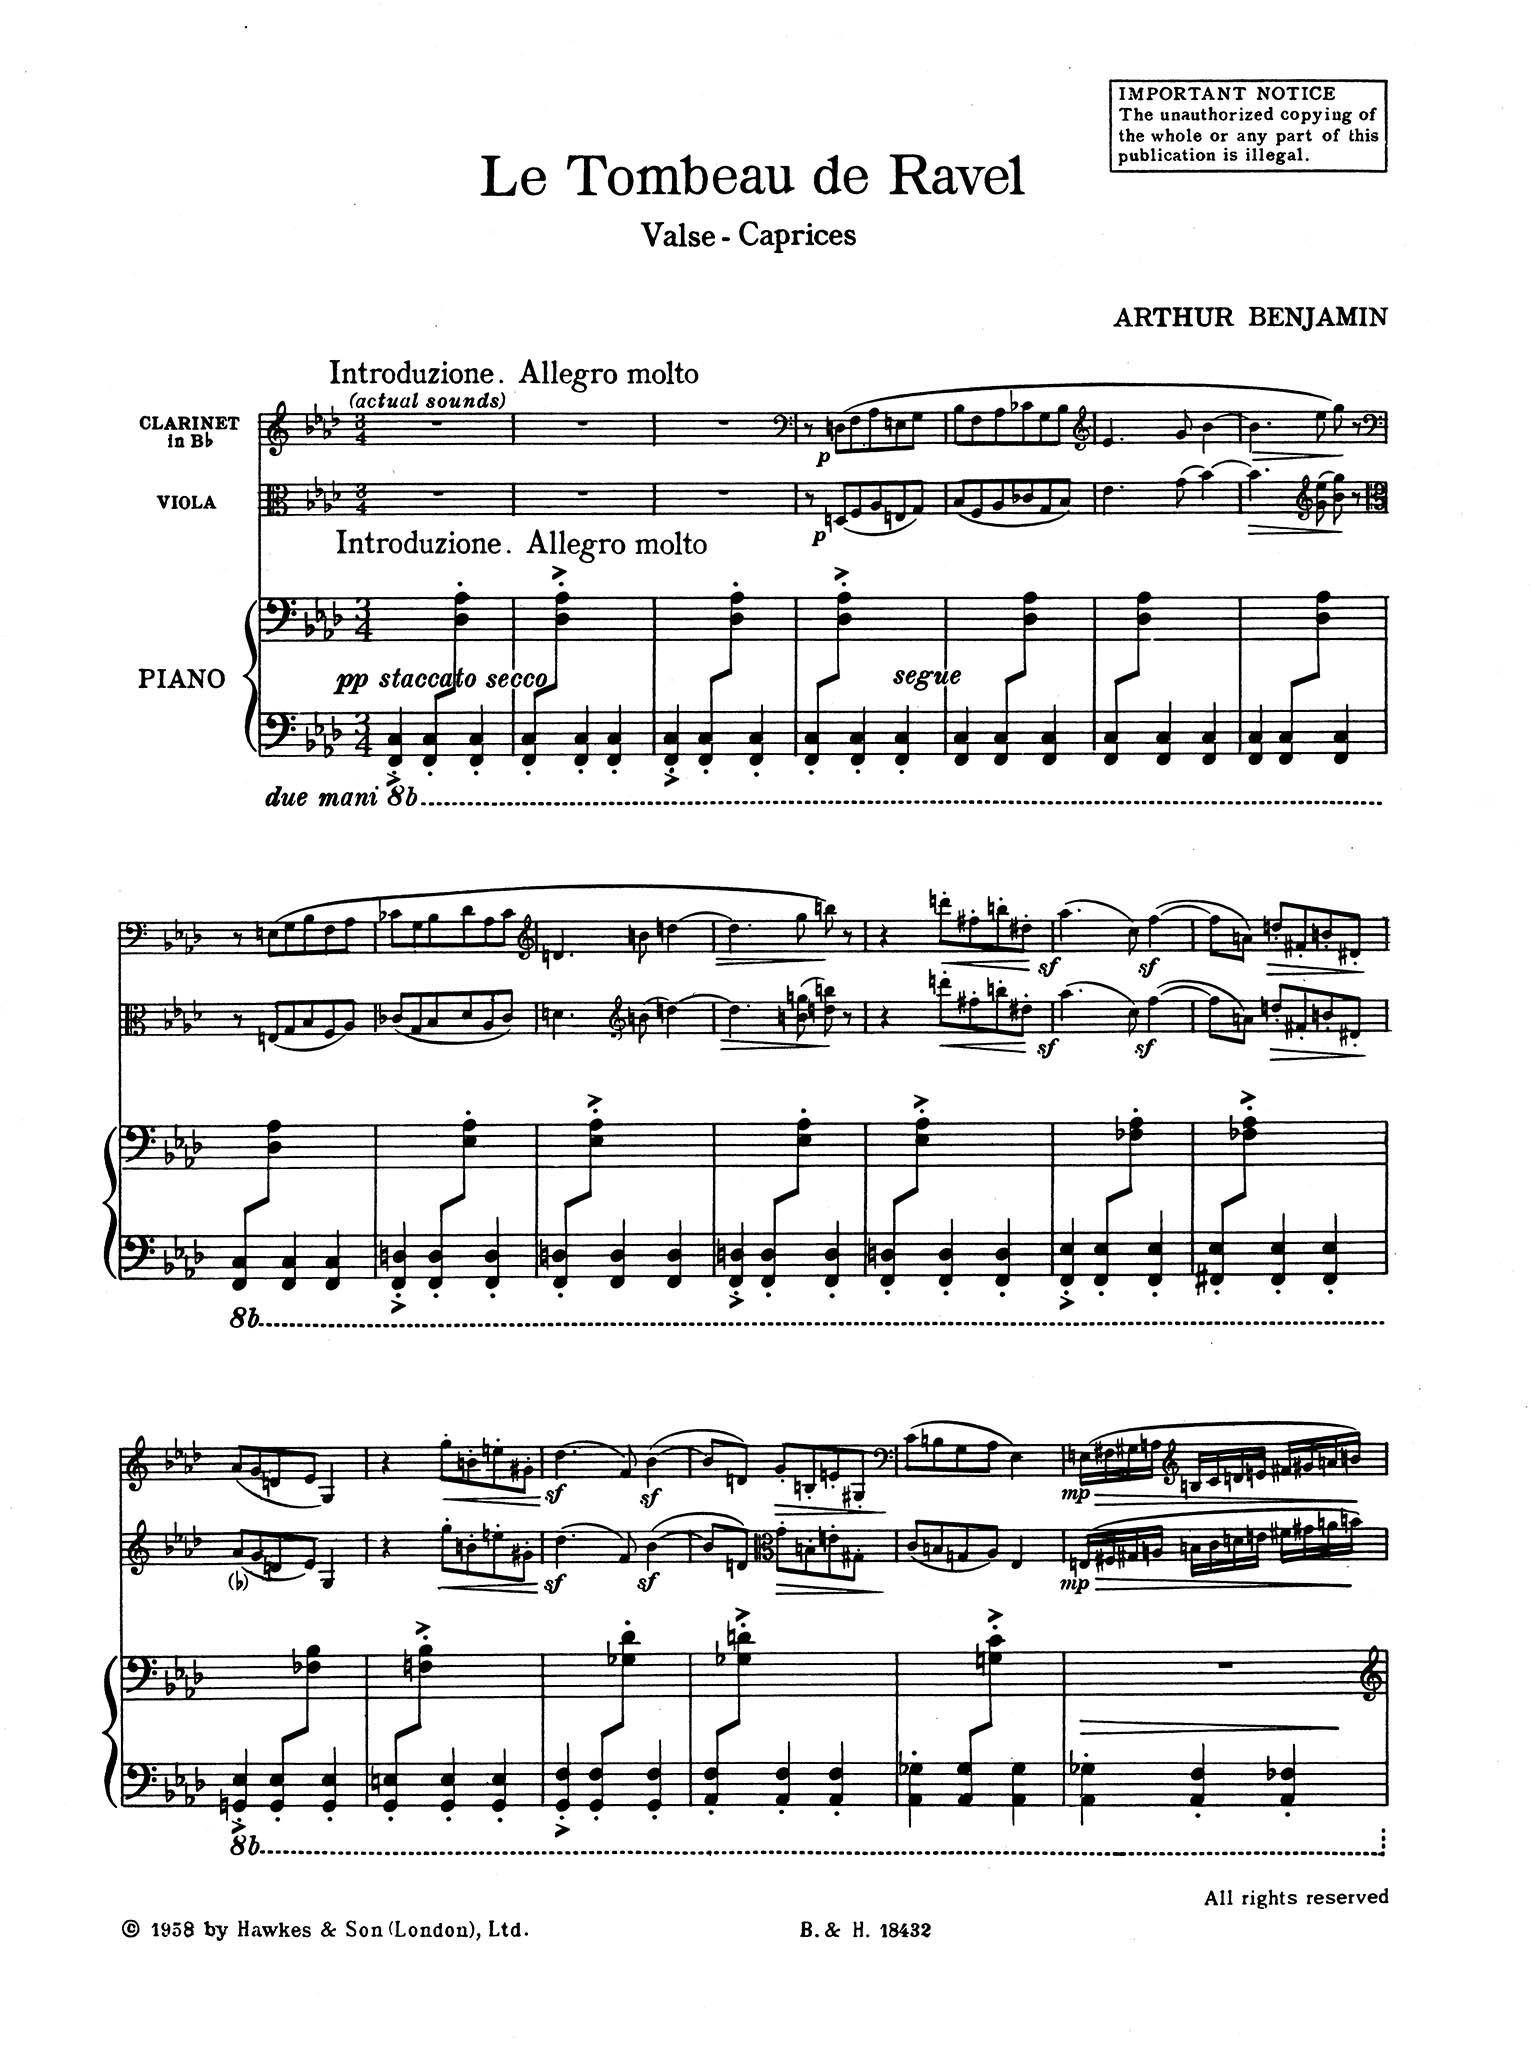 Le Tombeau de Ravel: Valse-Caprices Score